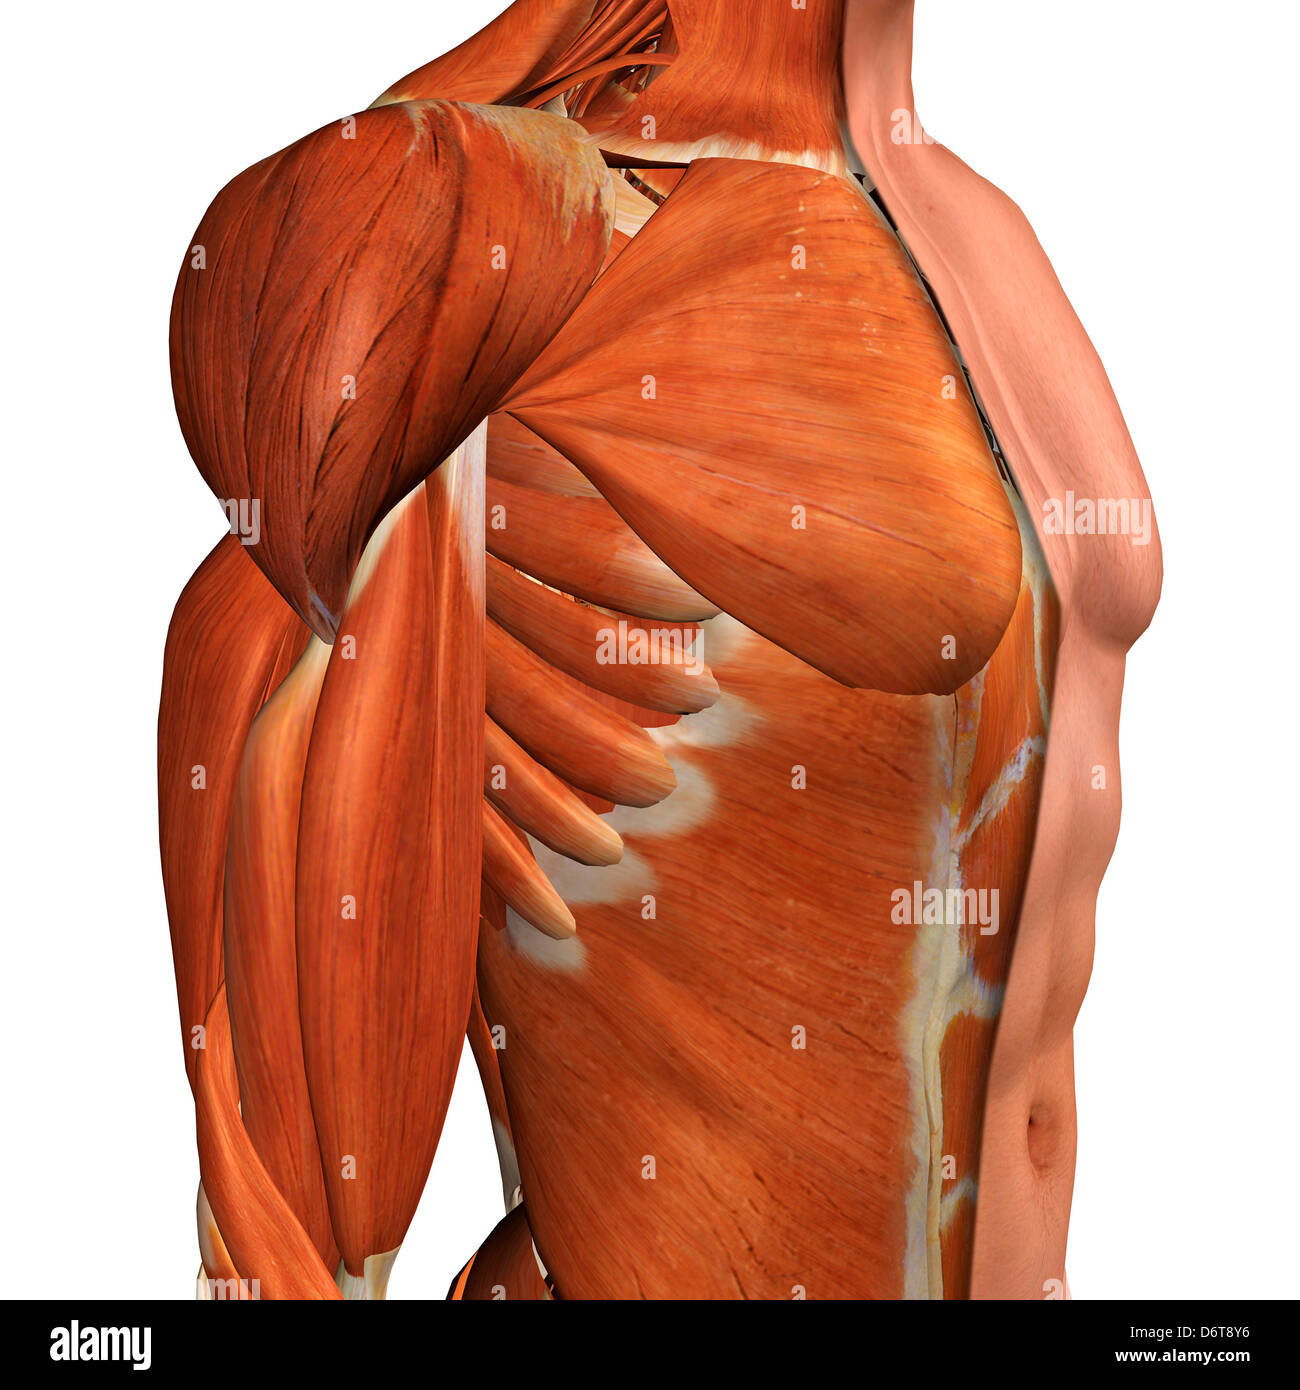 Querschnitt Anatomie der männlichen Brust, Bauch und Leistengegend Muskeln Stockfoto